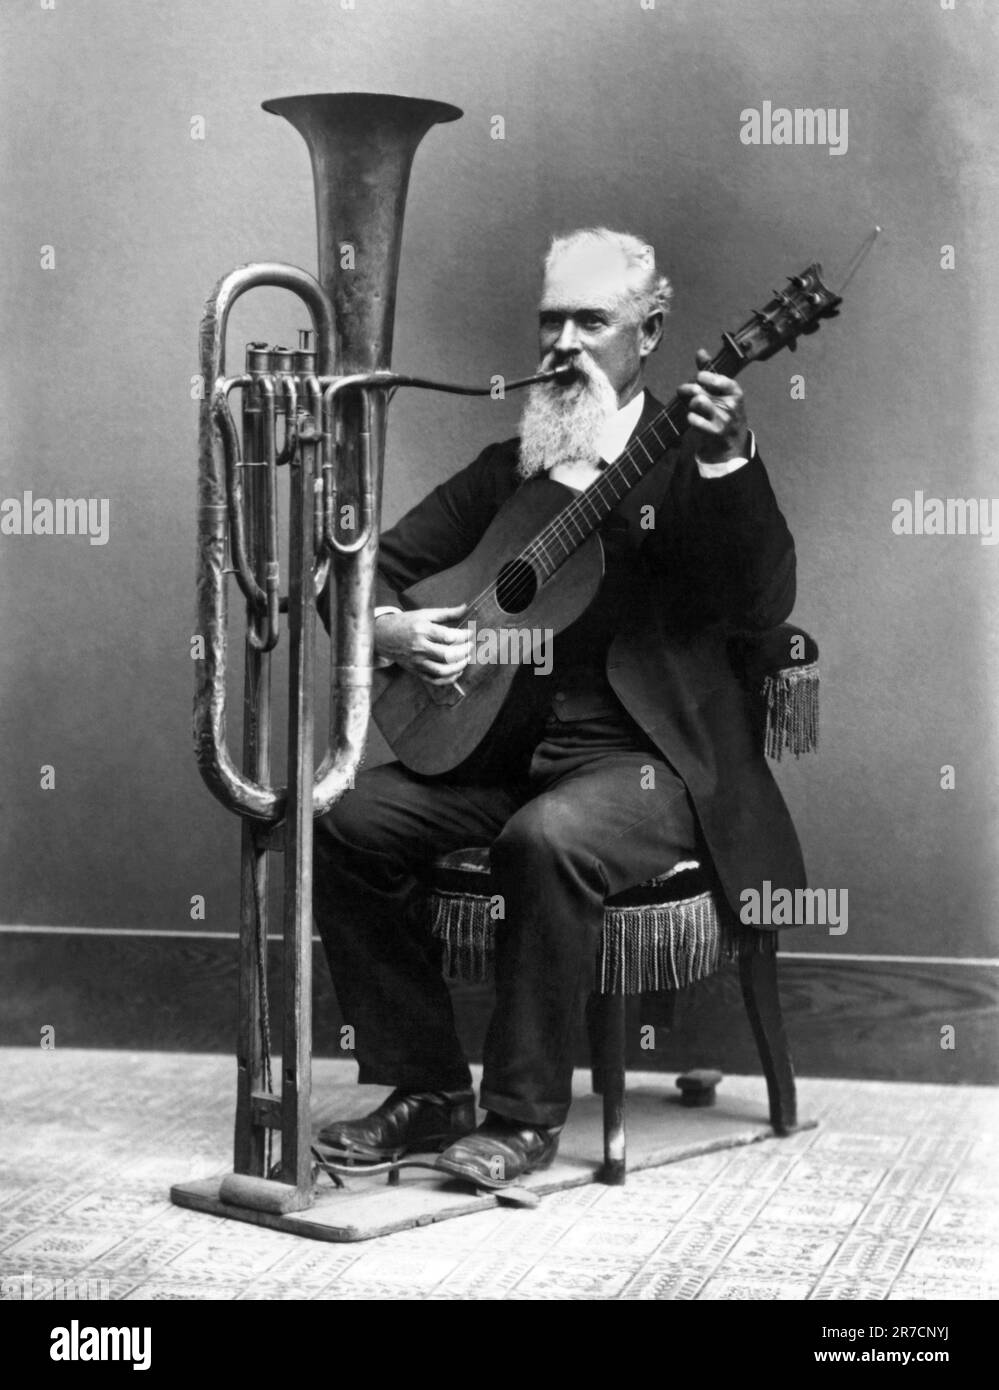 Monterey, Kalifornien: c. 1890 Miner, Musiker und Fotograf Charles Wallace Jacob Johnson spielt in seiner ein-Mann-Band seine Freihand-Tuba. Stockfoto